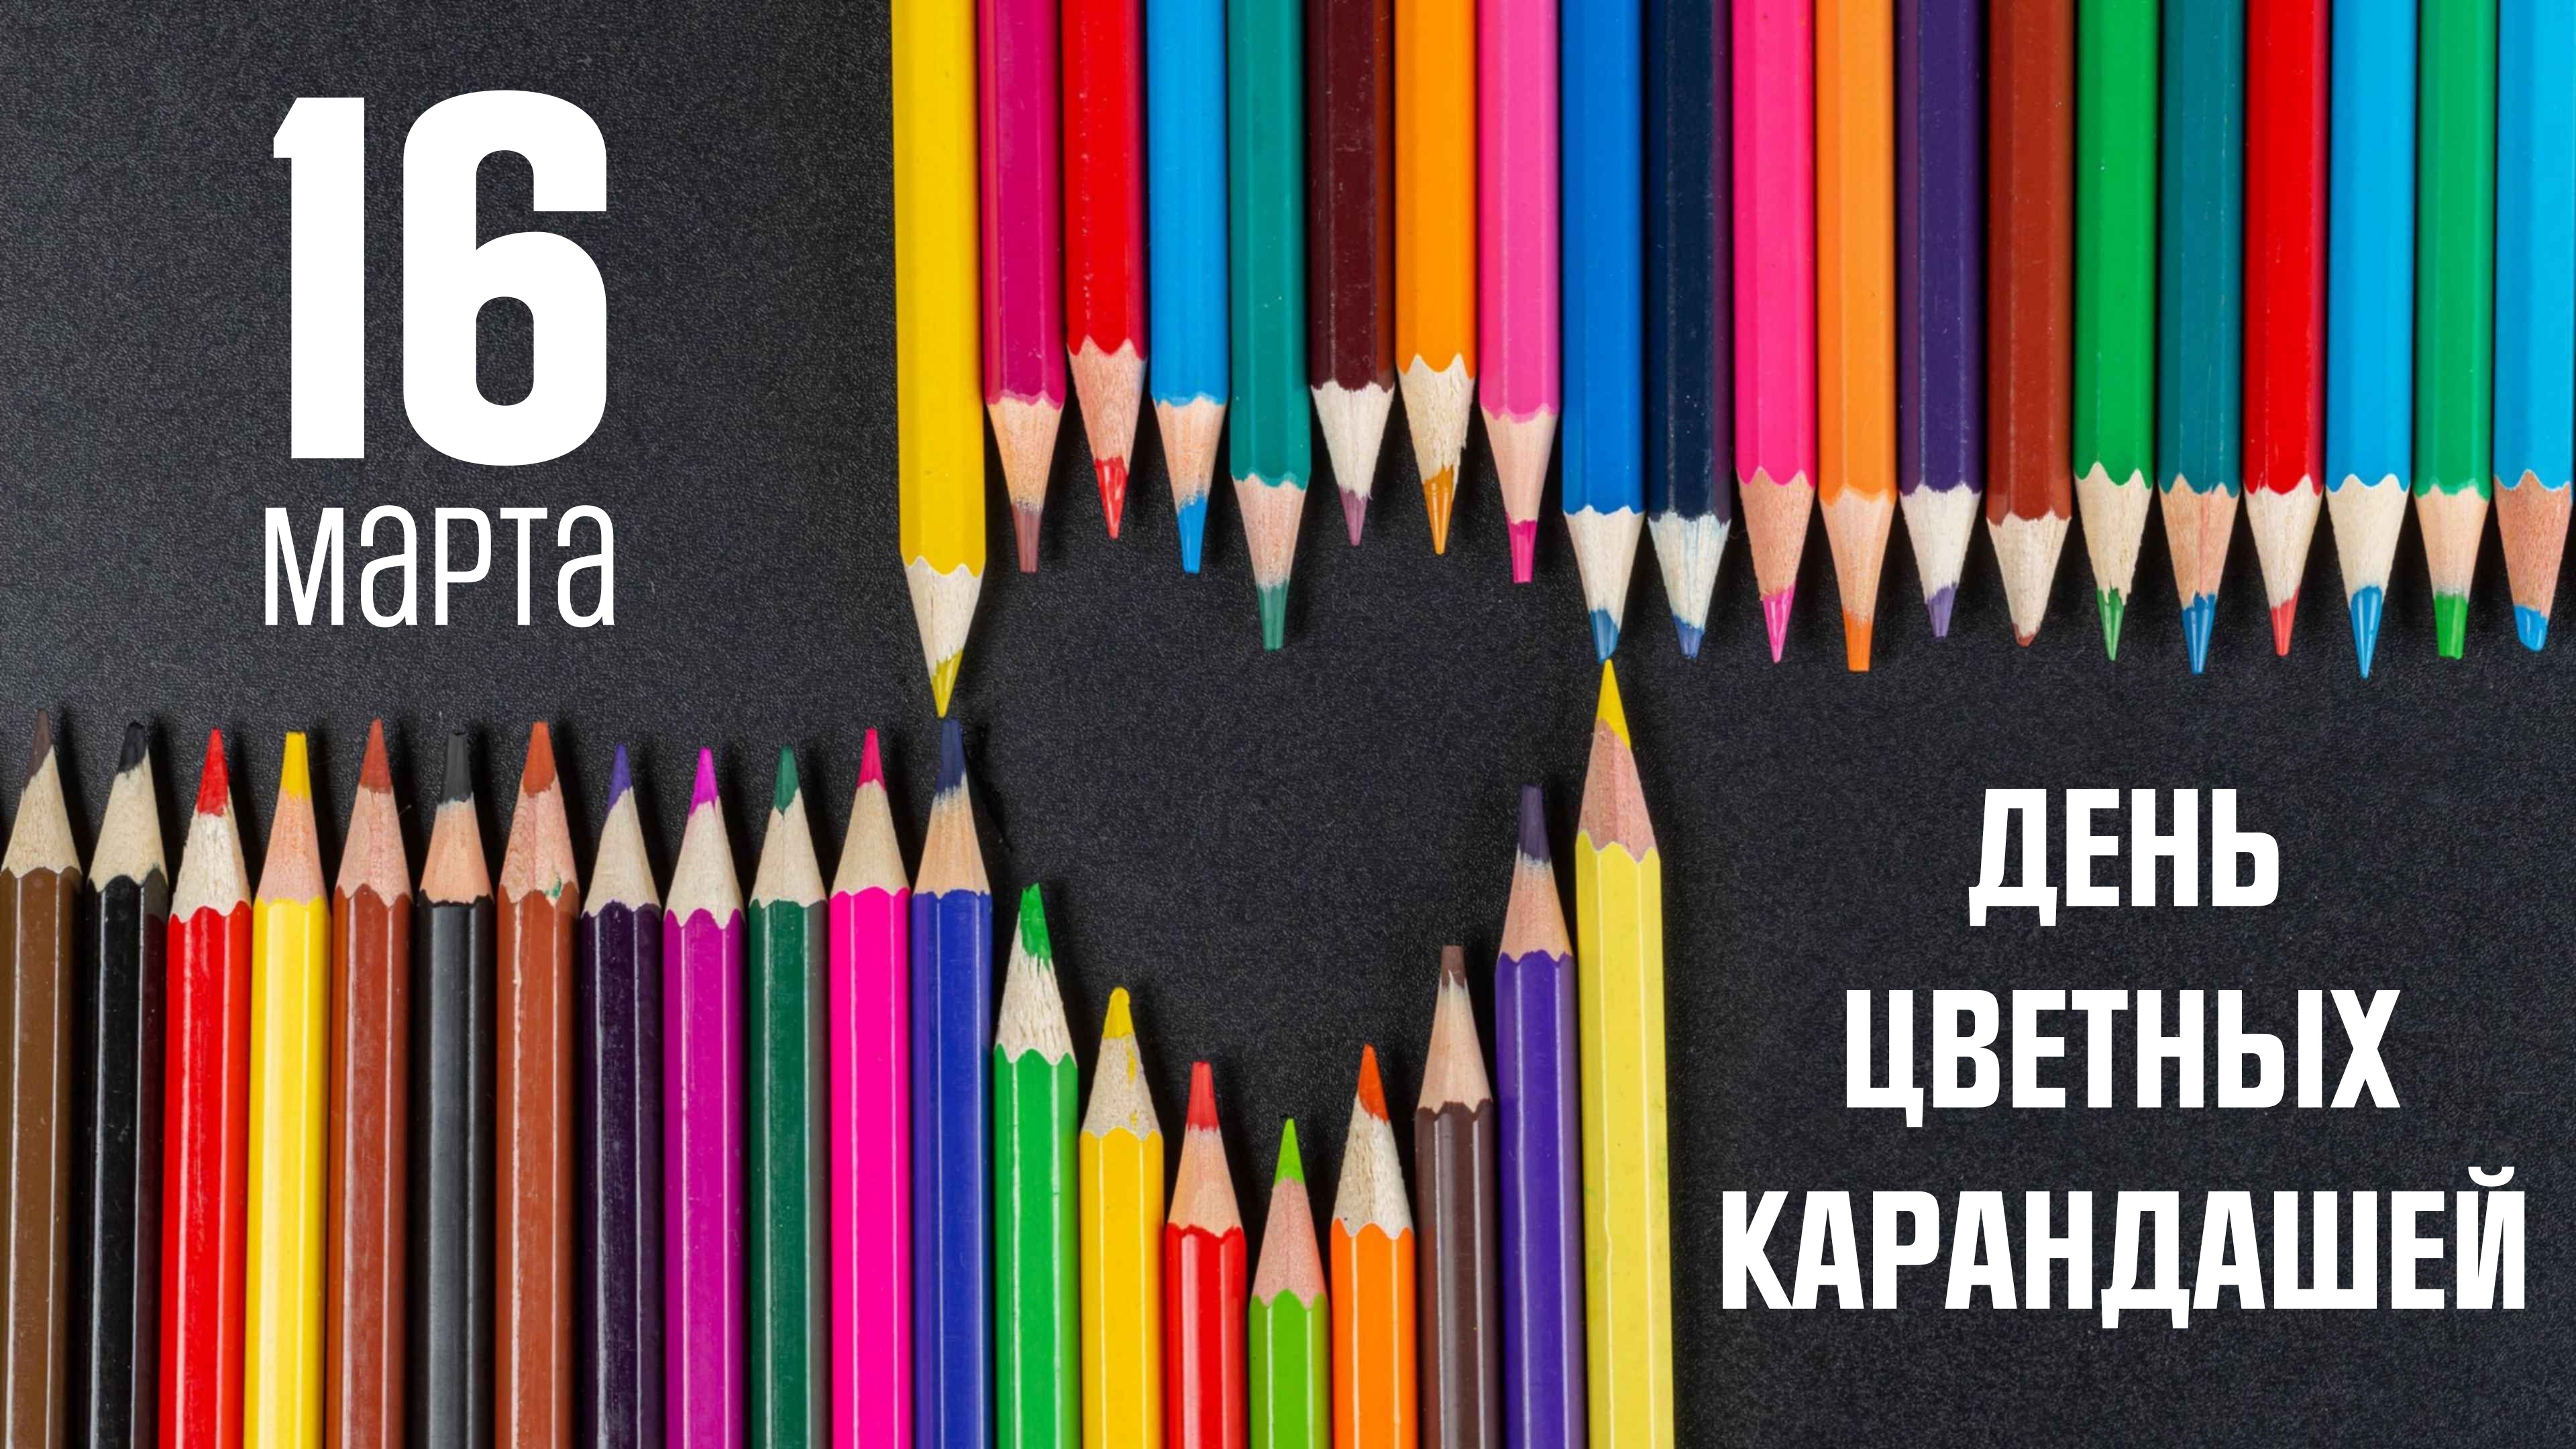 Девять карандашей. День цветных карандашей. Праздник цветных карандашей. День цветных карандашей картинки.